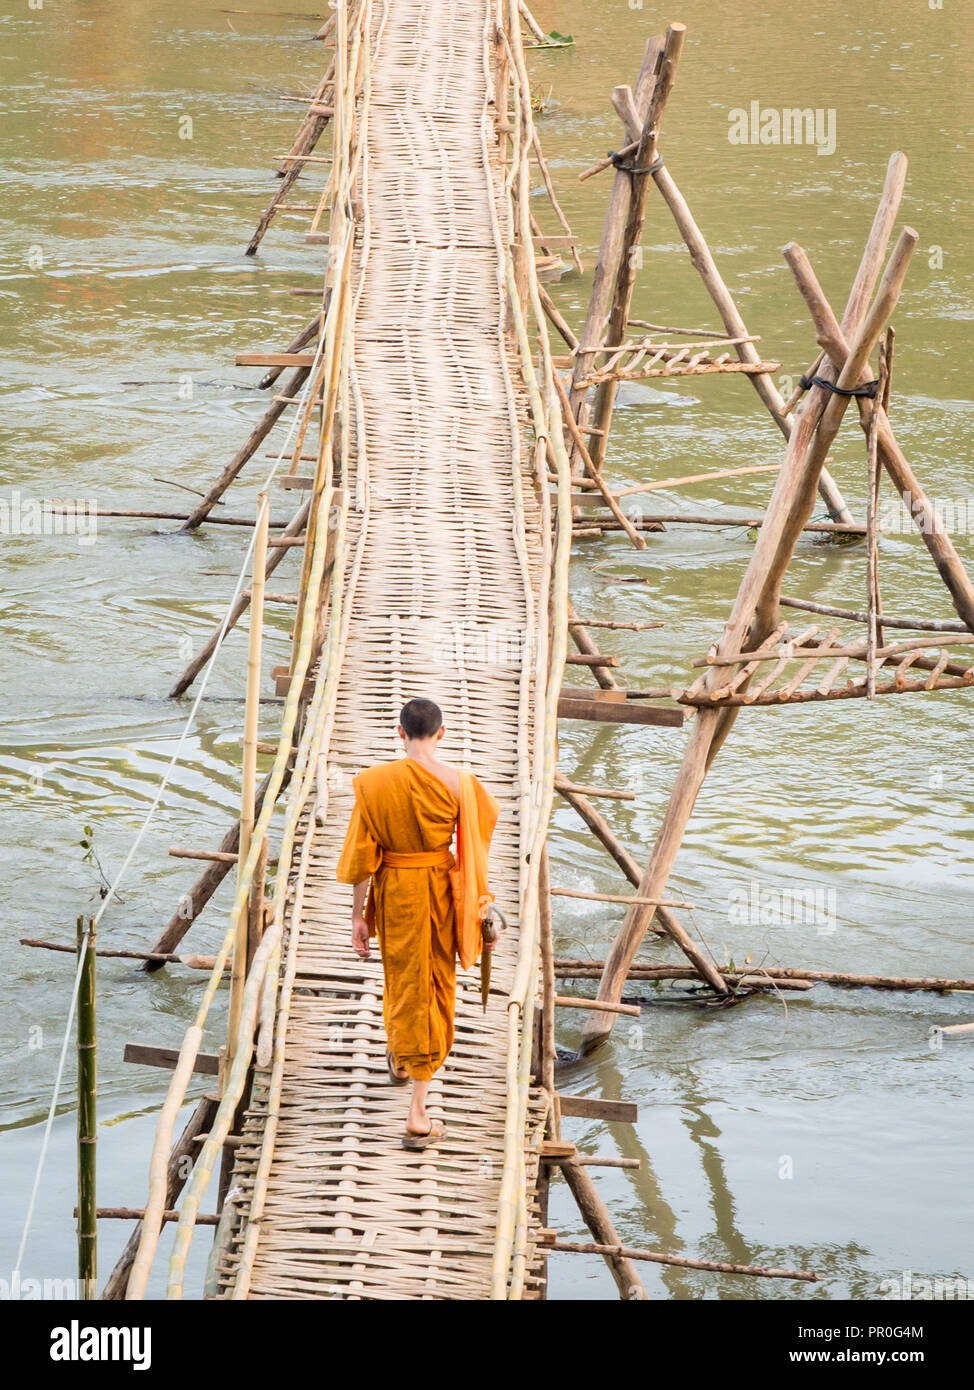 Orange-clad le moine bouddhiste traversant un pont de bambou, Luang Prabang, Laos, Indochine, Asie du Sud, Asie Banque D'Images